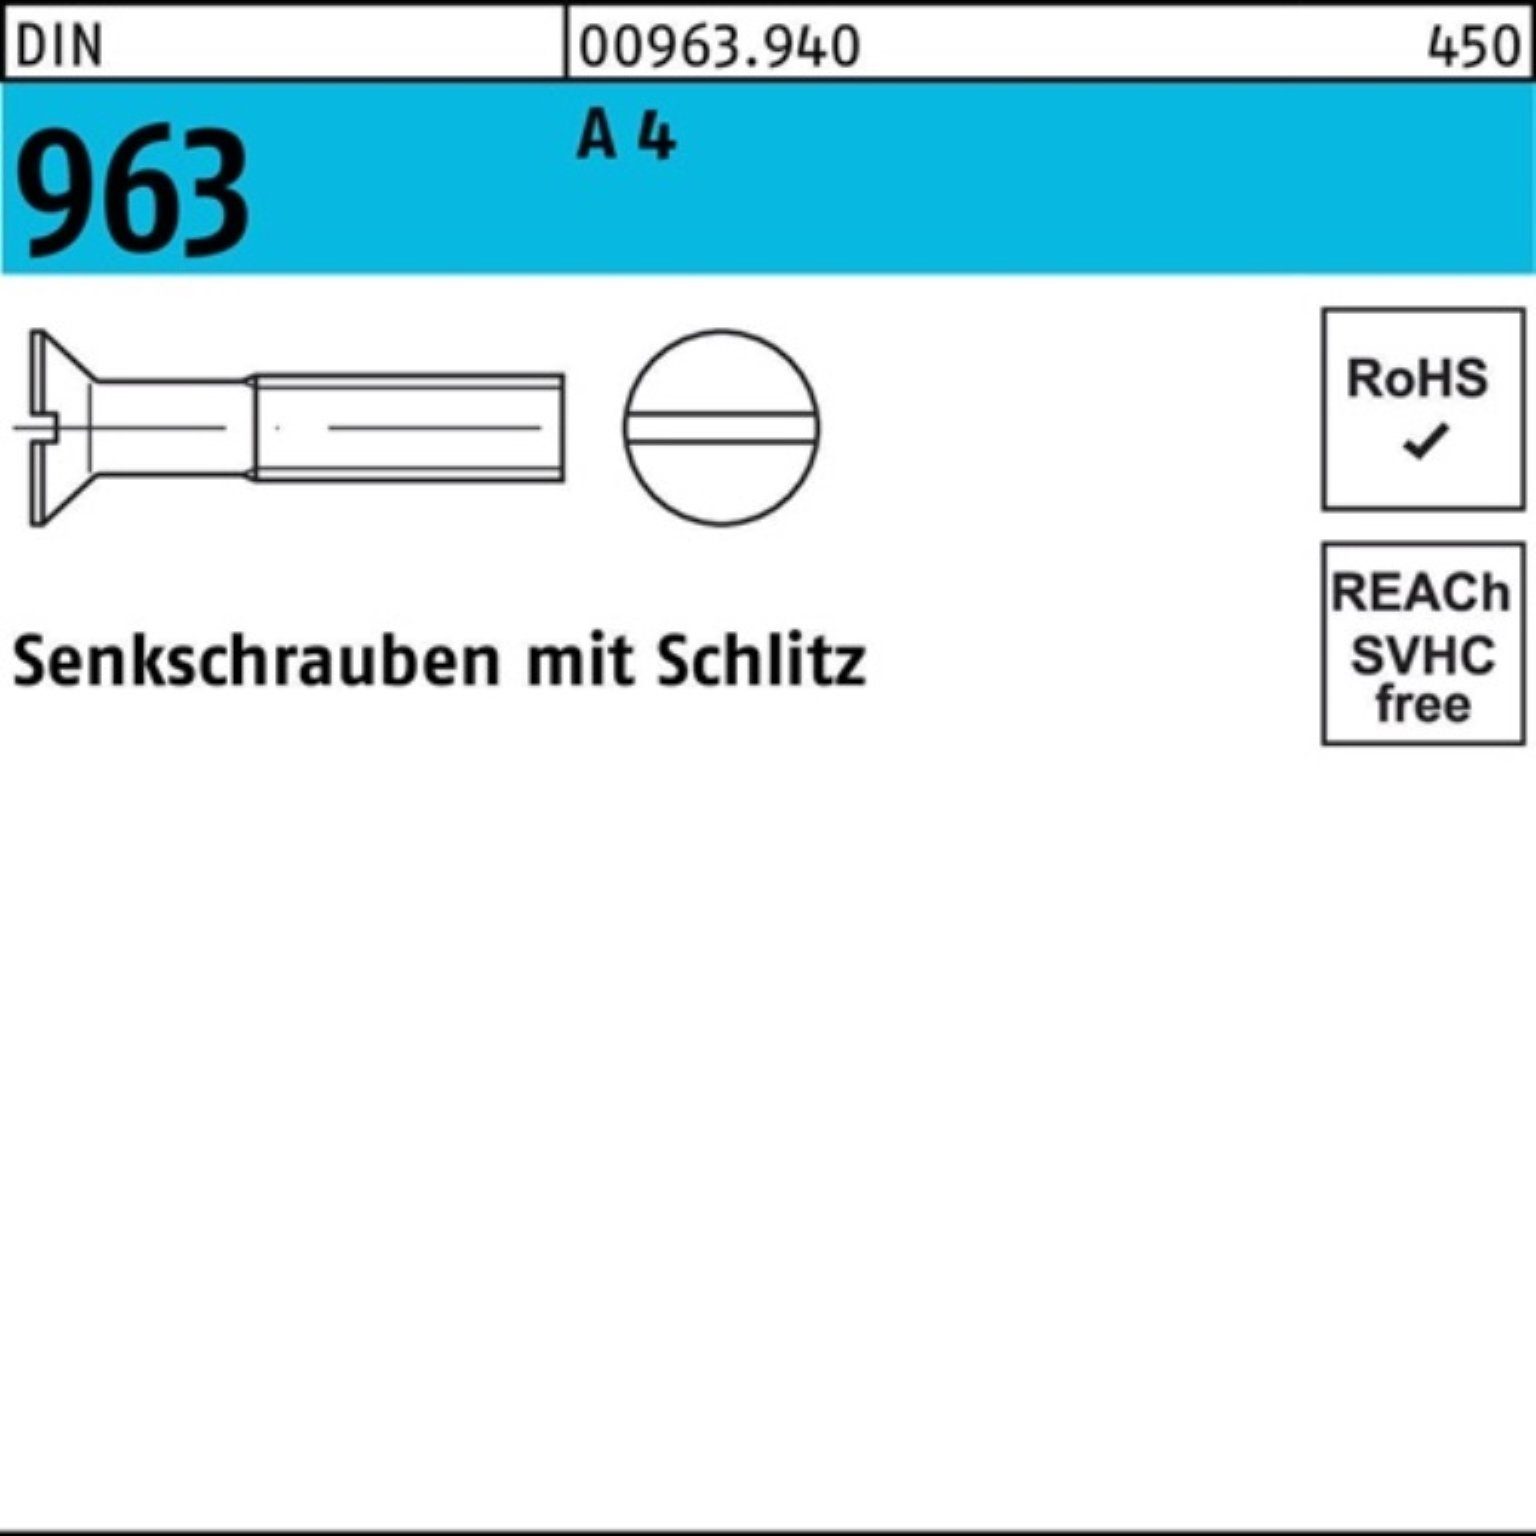 Reyher Senkschraube 100er Pack 963 M8x 12 963 Senkschraube A Schlitz 4 DIN A 50 DIN Stück